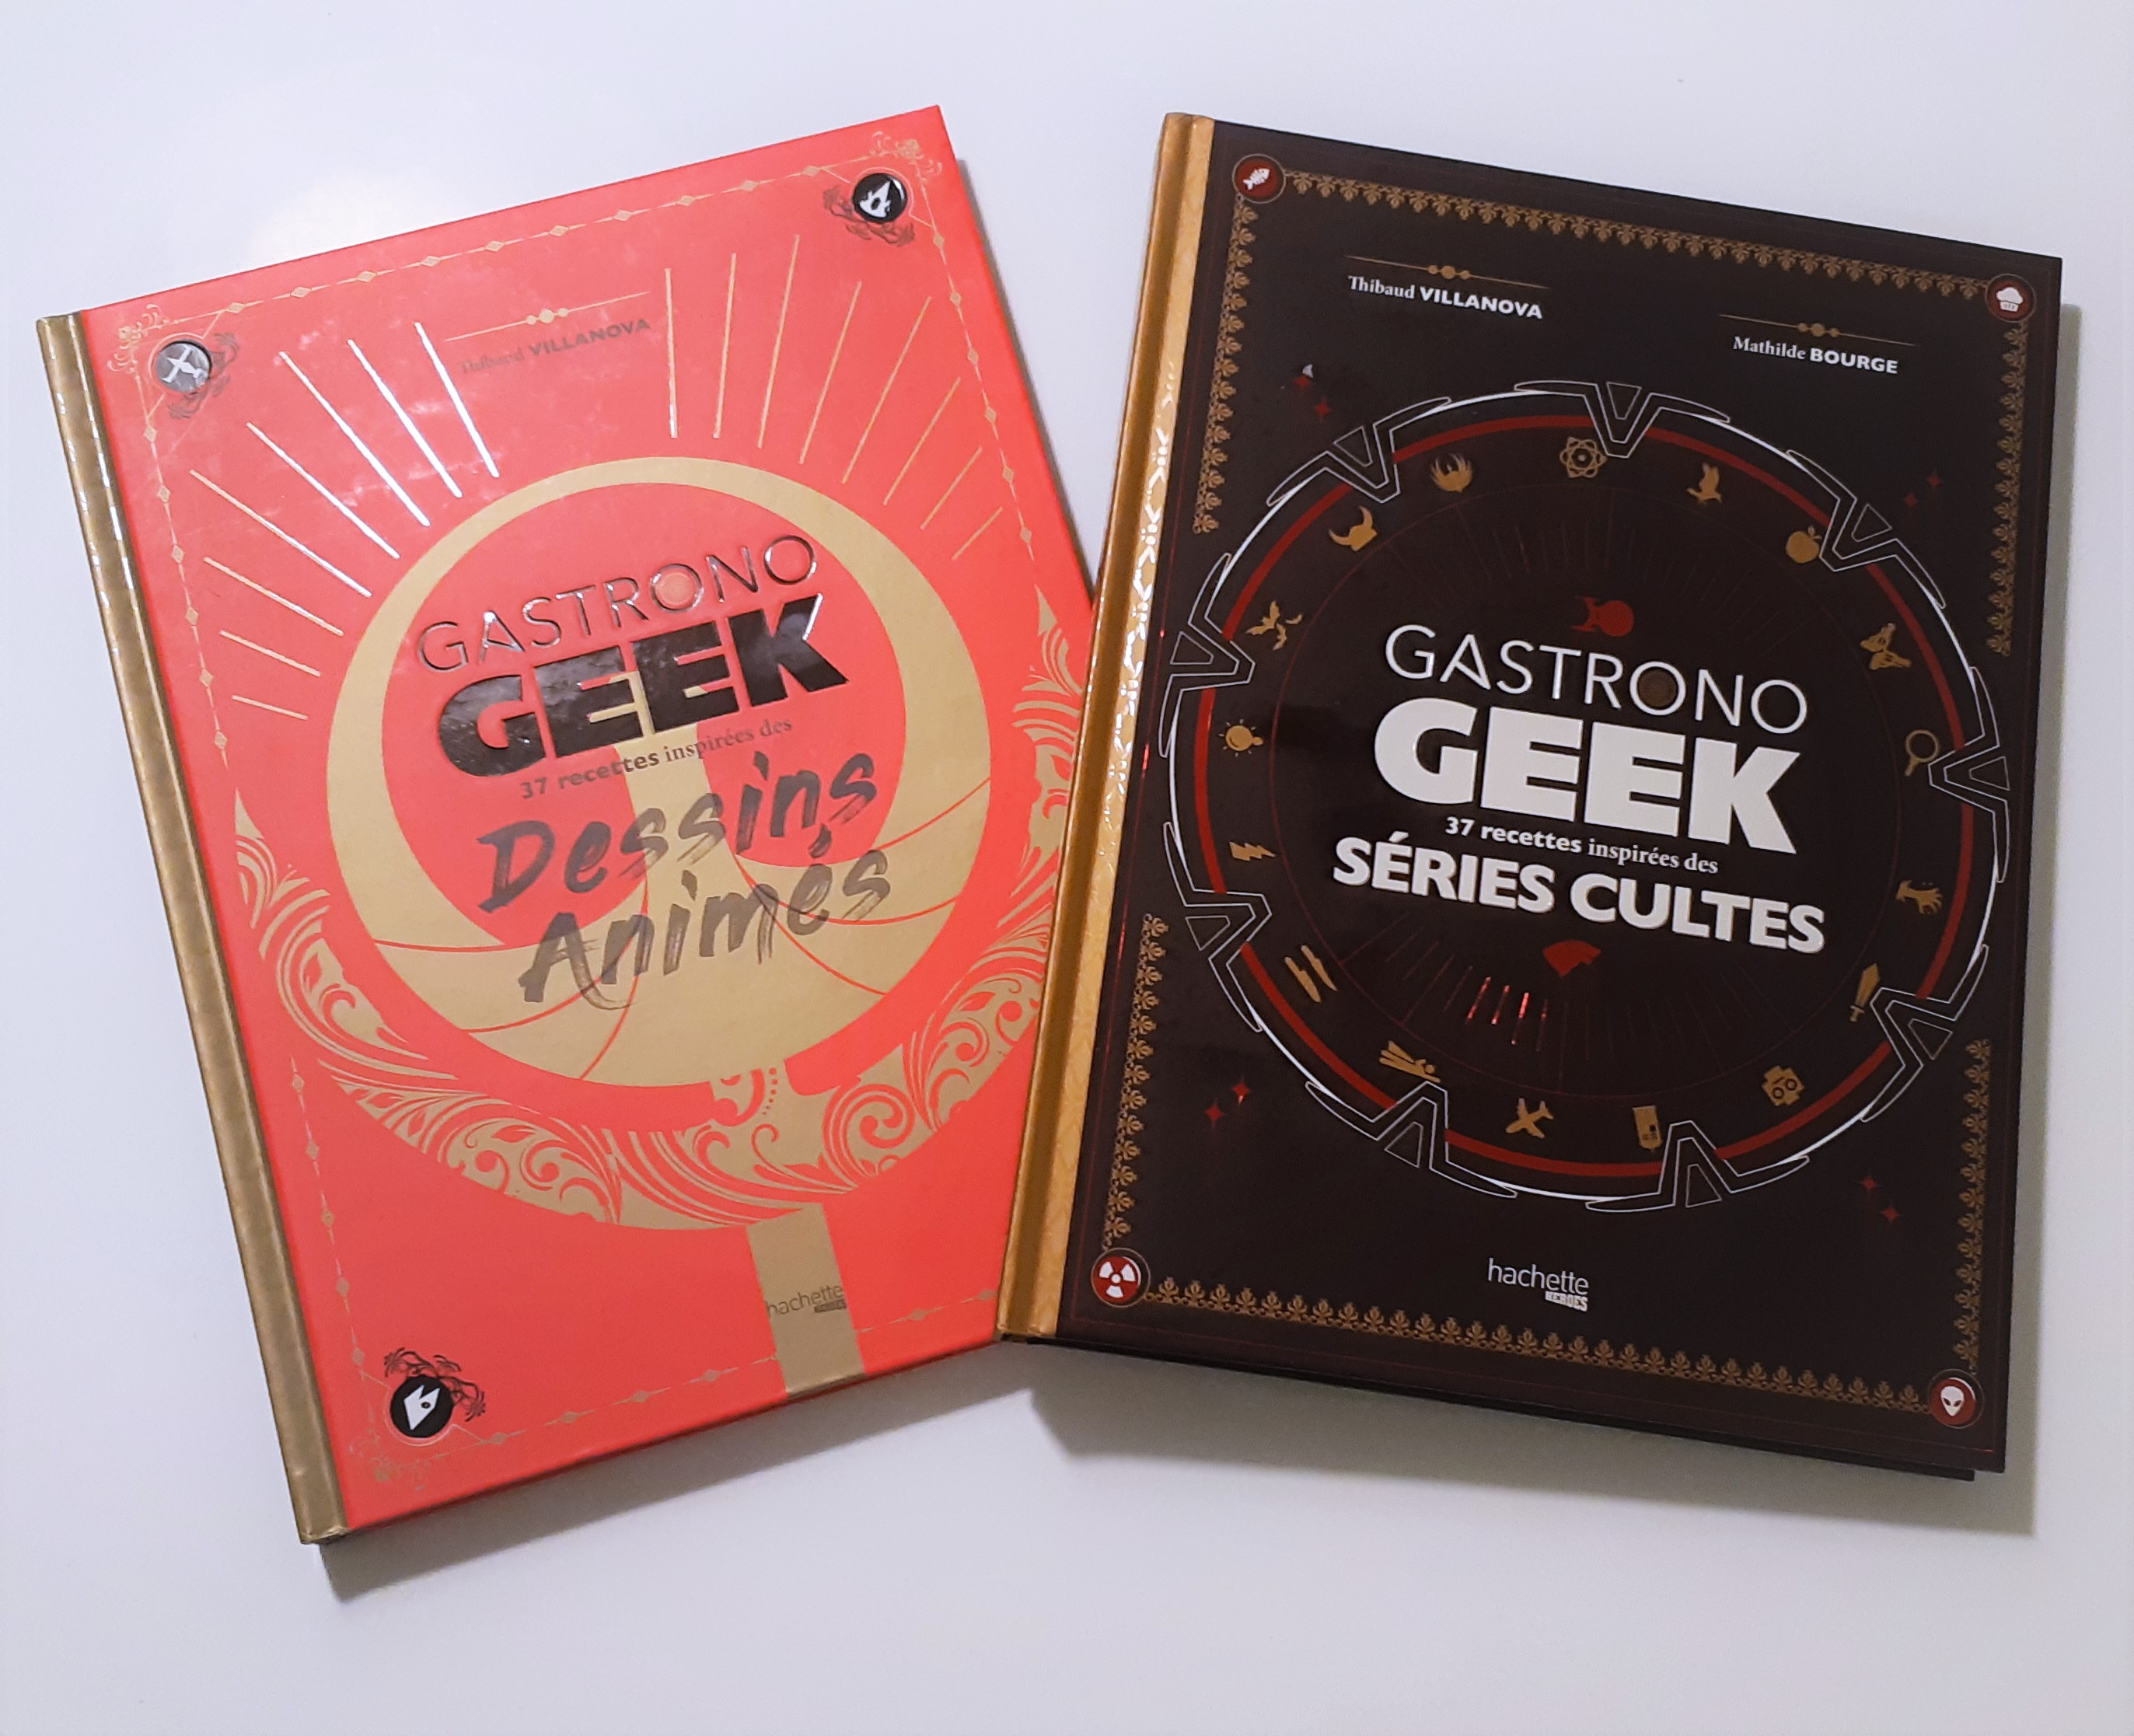 Gastrono Geek, Dessins Animés et Séries Cultes